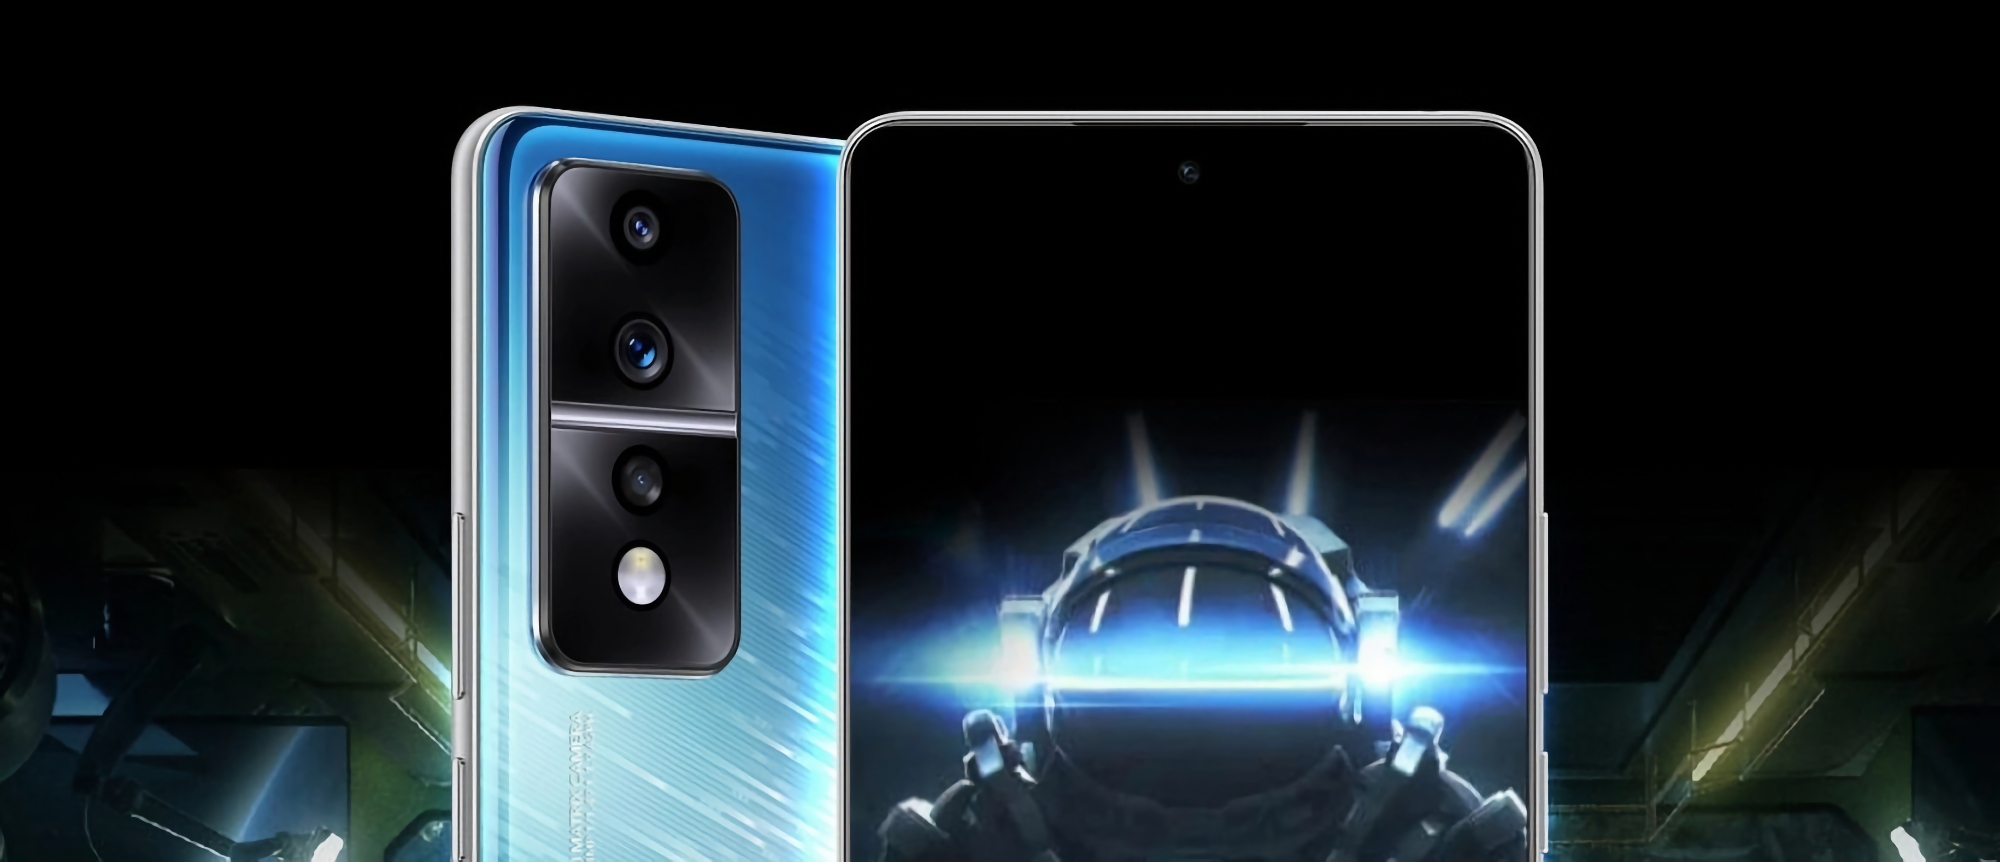 Das Honor 80 GT Gaming-Smartphone wird eine 54-MP-Kamera, ein 120-Hz-OLED-Display, einen Snapdragon 8+ Gen 1-Chip und einen Preis von etwa 430 US-Dollar haben.